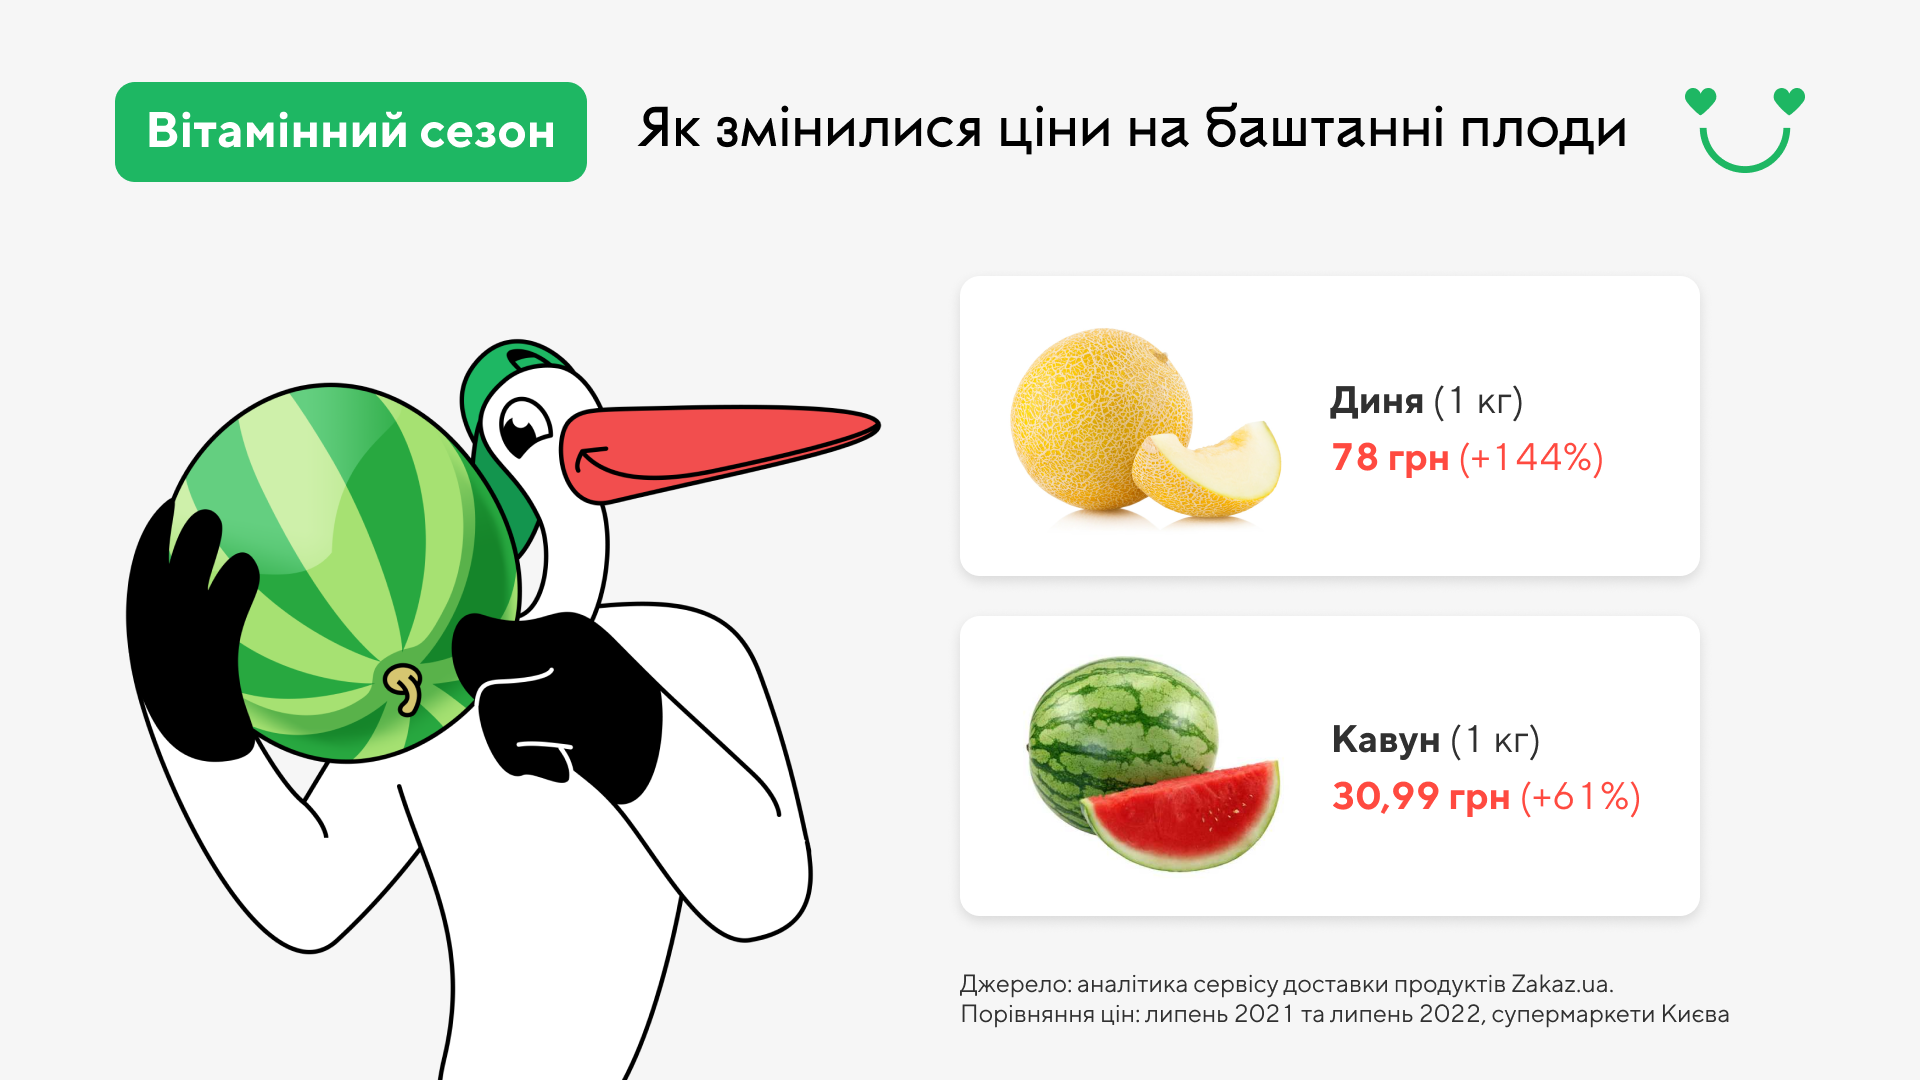 Цены на арбузы и дыниГрафика: Zakaz.ua